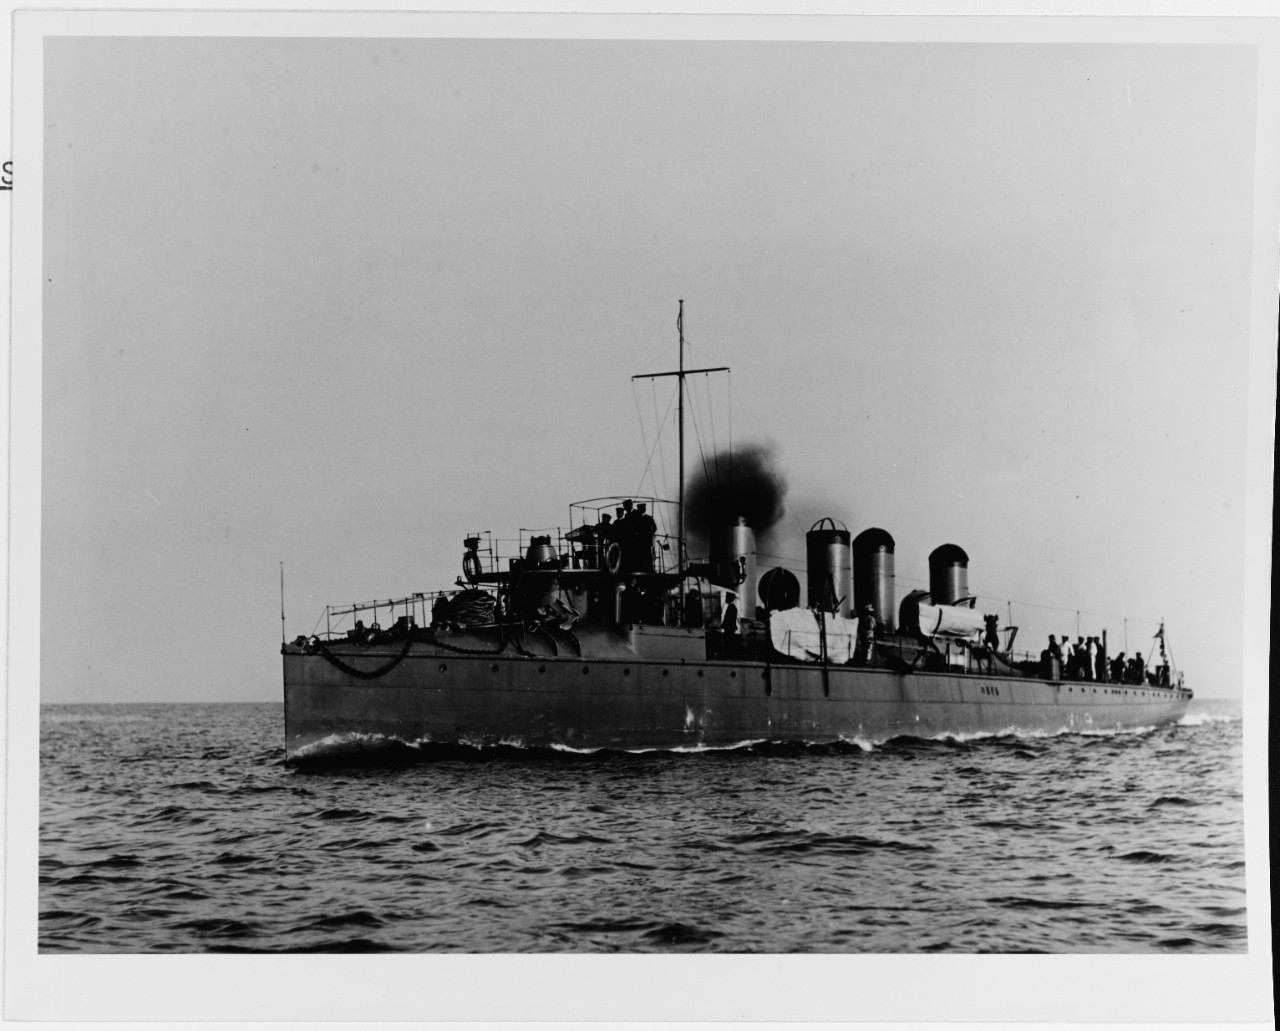 Japanese Ikazuchi class destroyer